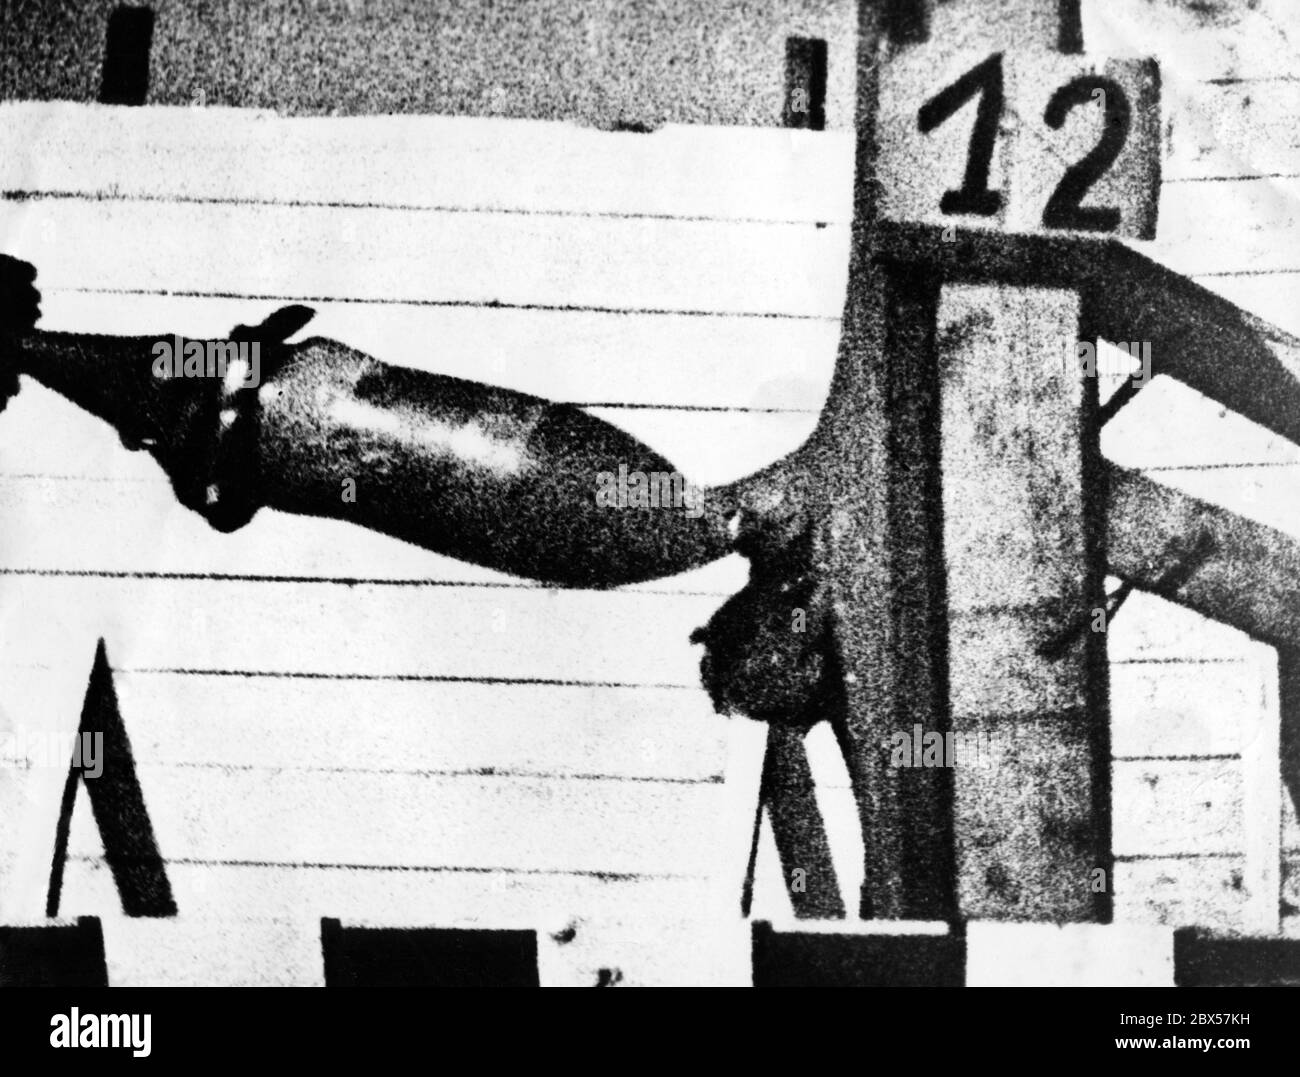 Eine Zeitlupenkamera soll Informationen über die Herstellung von Bomben und Munition liefern. Dieses Zeitlupenbild zeigt den Einfluss panzerbrechender Munition auf das Testziel aus Stahl. Es ist bereits zu sehen, wie die Kugel die Metalloberfläche verformt. Je nach Art der Munition wird das Ziel auf unterschiedliche Weise durchdrungen. Stockfoto